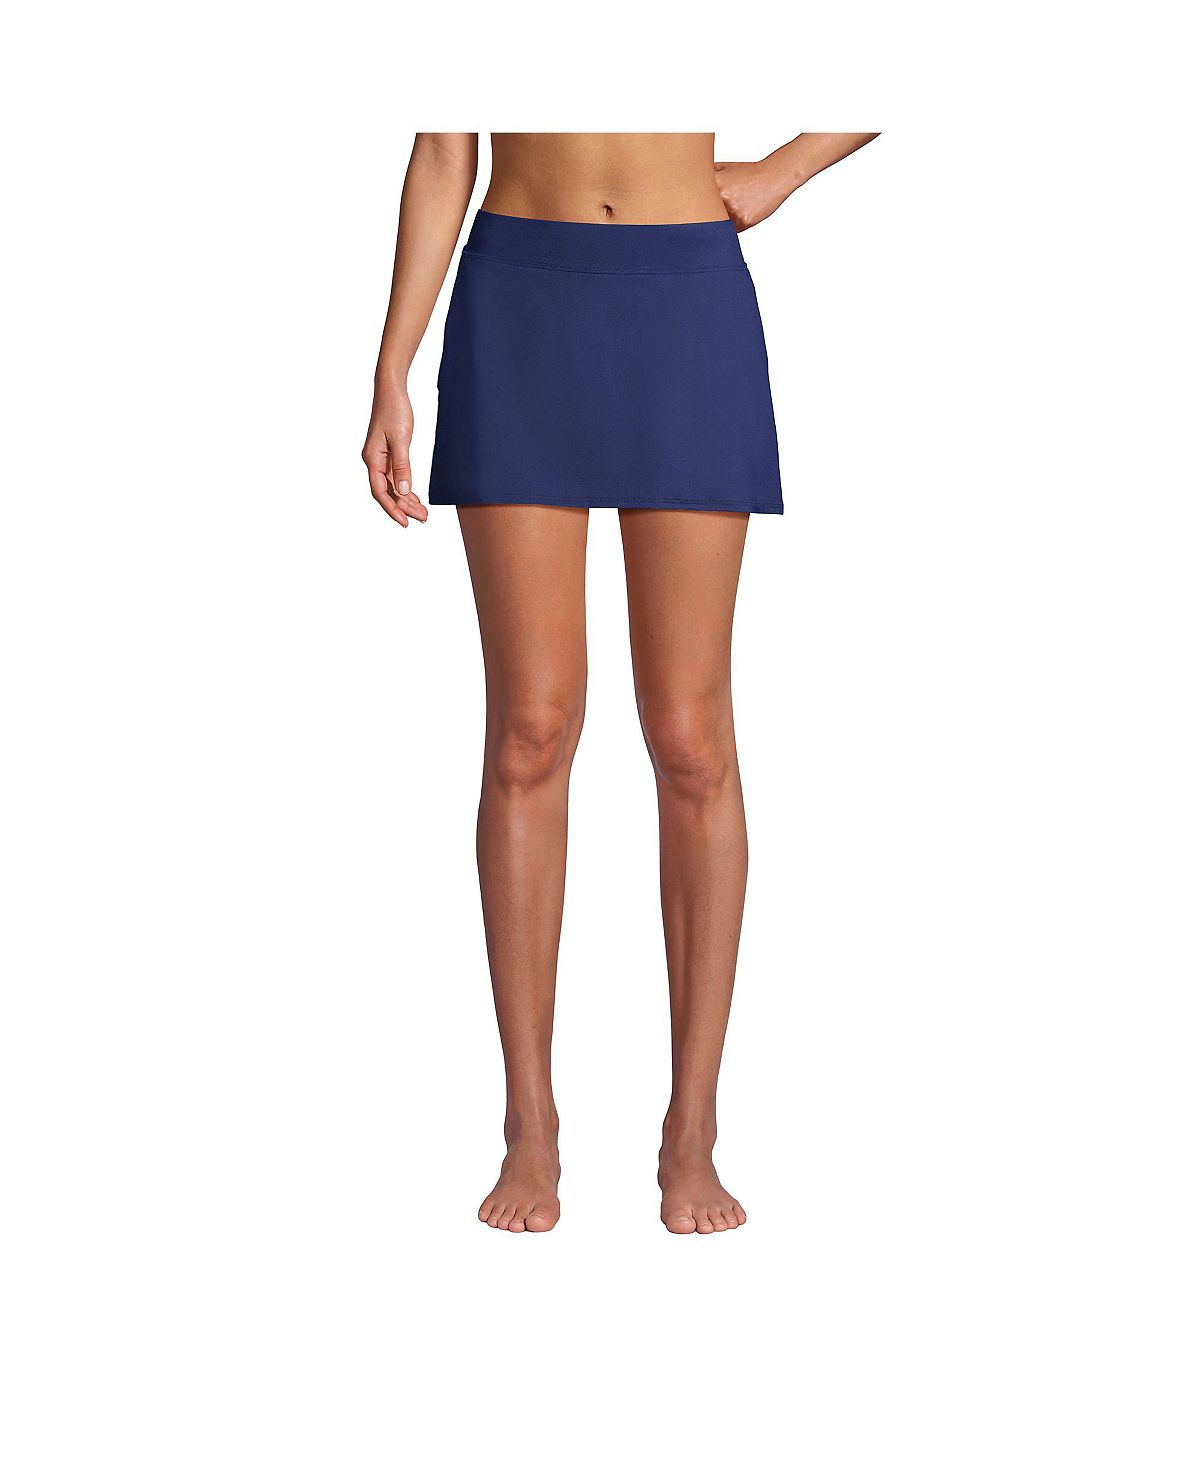 Женская юбка для плавания для миниатюрных размеров, плавки для плавания Lands' End